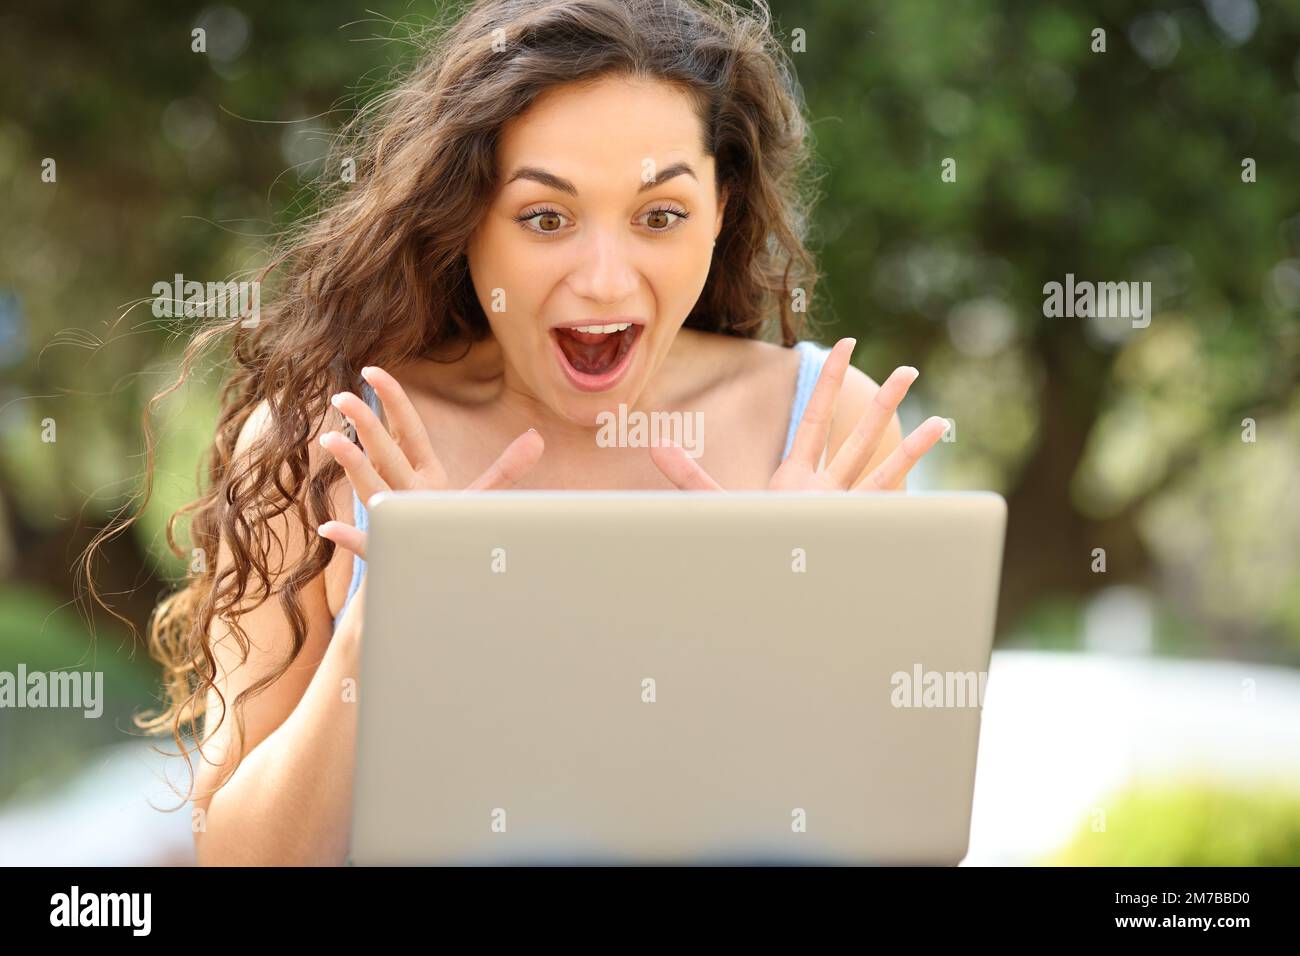 Retrato de la vista frontal de una mujer asombrada que comprueba el ordenador portátil en un parque Foto de stock